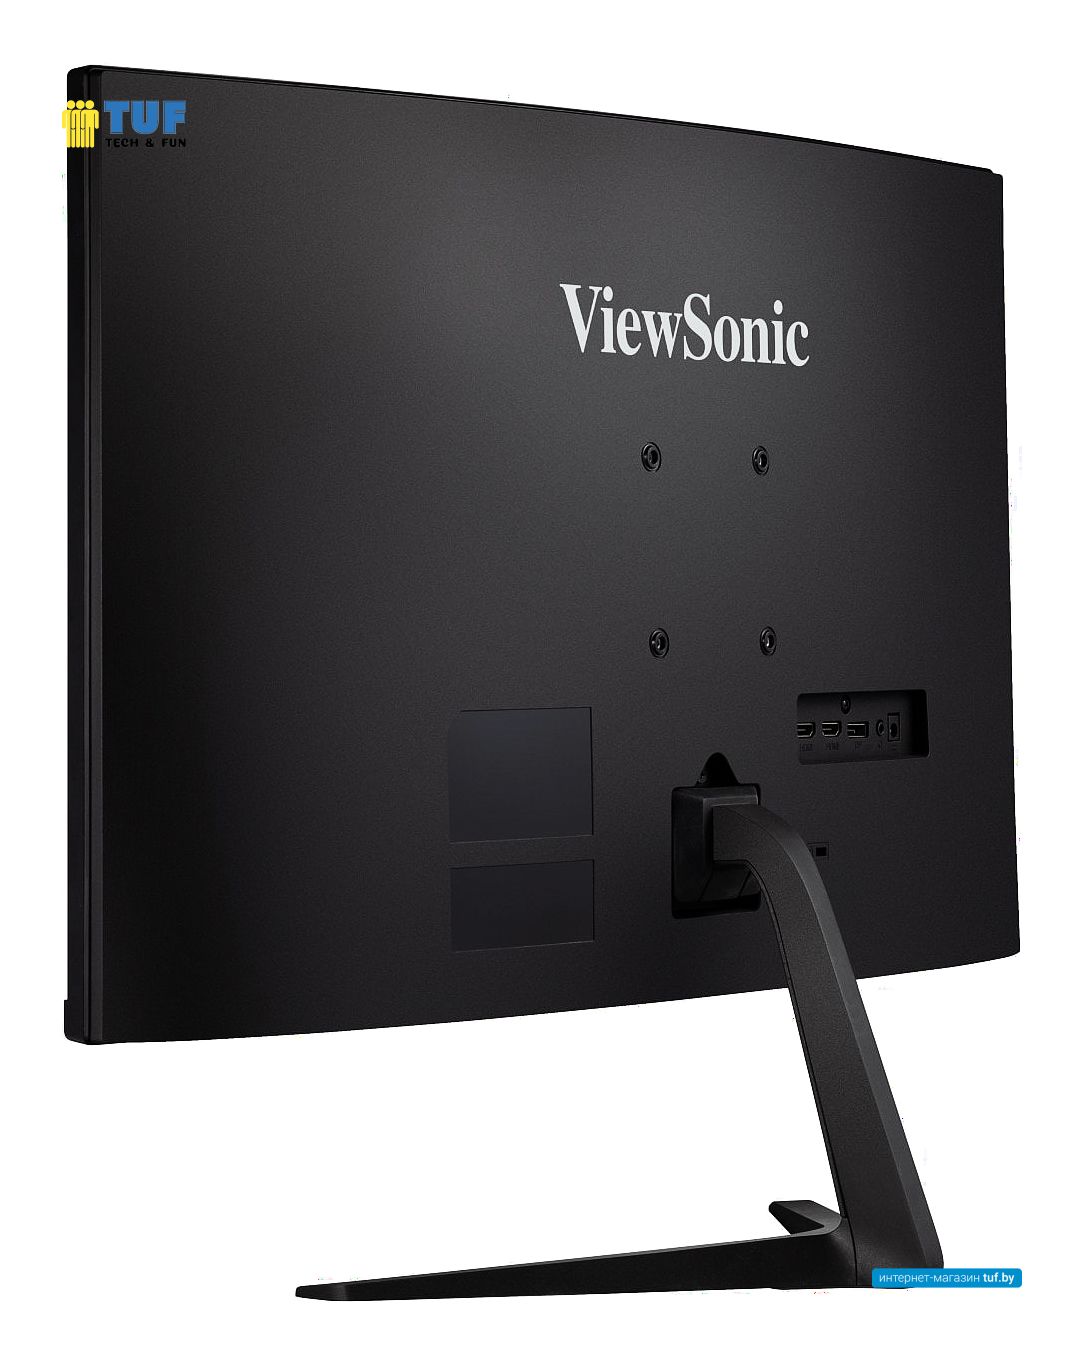 Игровой монитор ViewSonic VX2718-2KPC-MHD